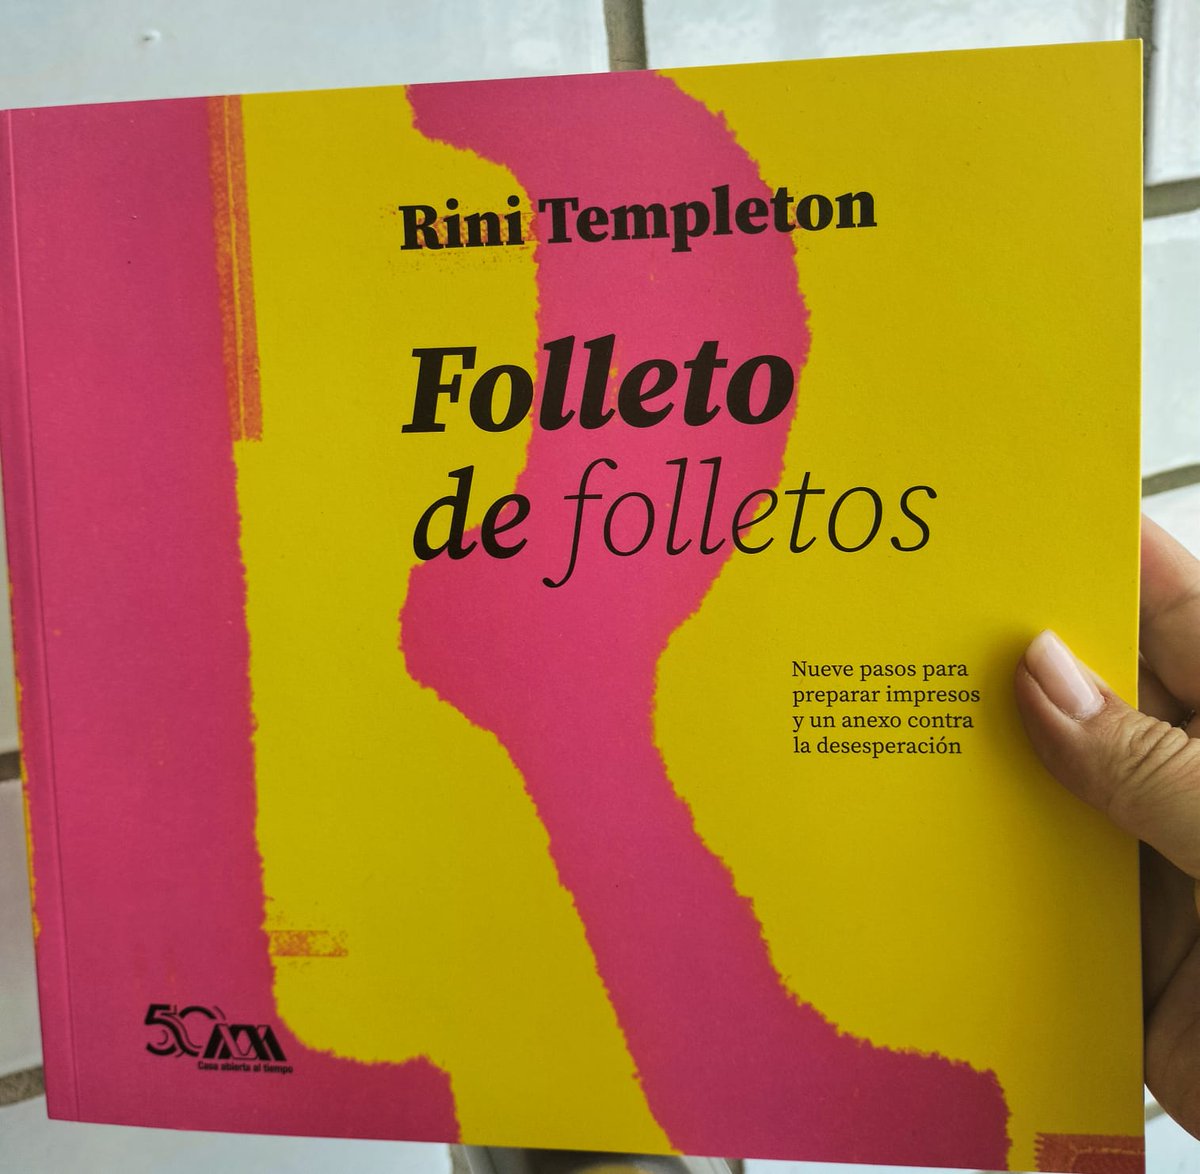 Este libro expone el trabajo de la edición y las artes gráficas. Su autora, Rini Templeton, estaba interesada en diseñar un material dirigido a todos aquellos que, interesados en hacer labores de prensa y propaganda, necesitaran elaborar un impreso. 
#Librossobrelibros #23deabril